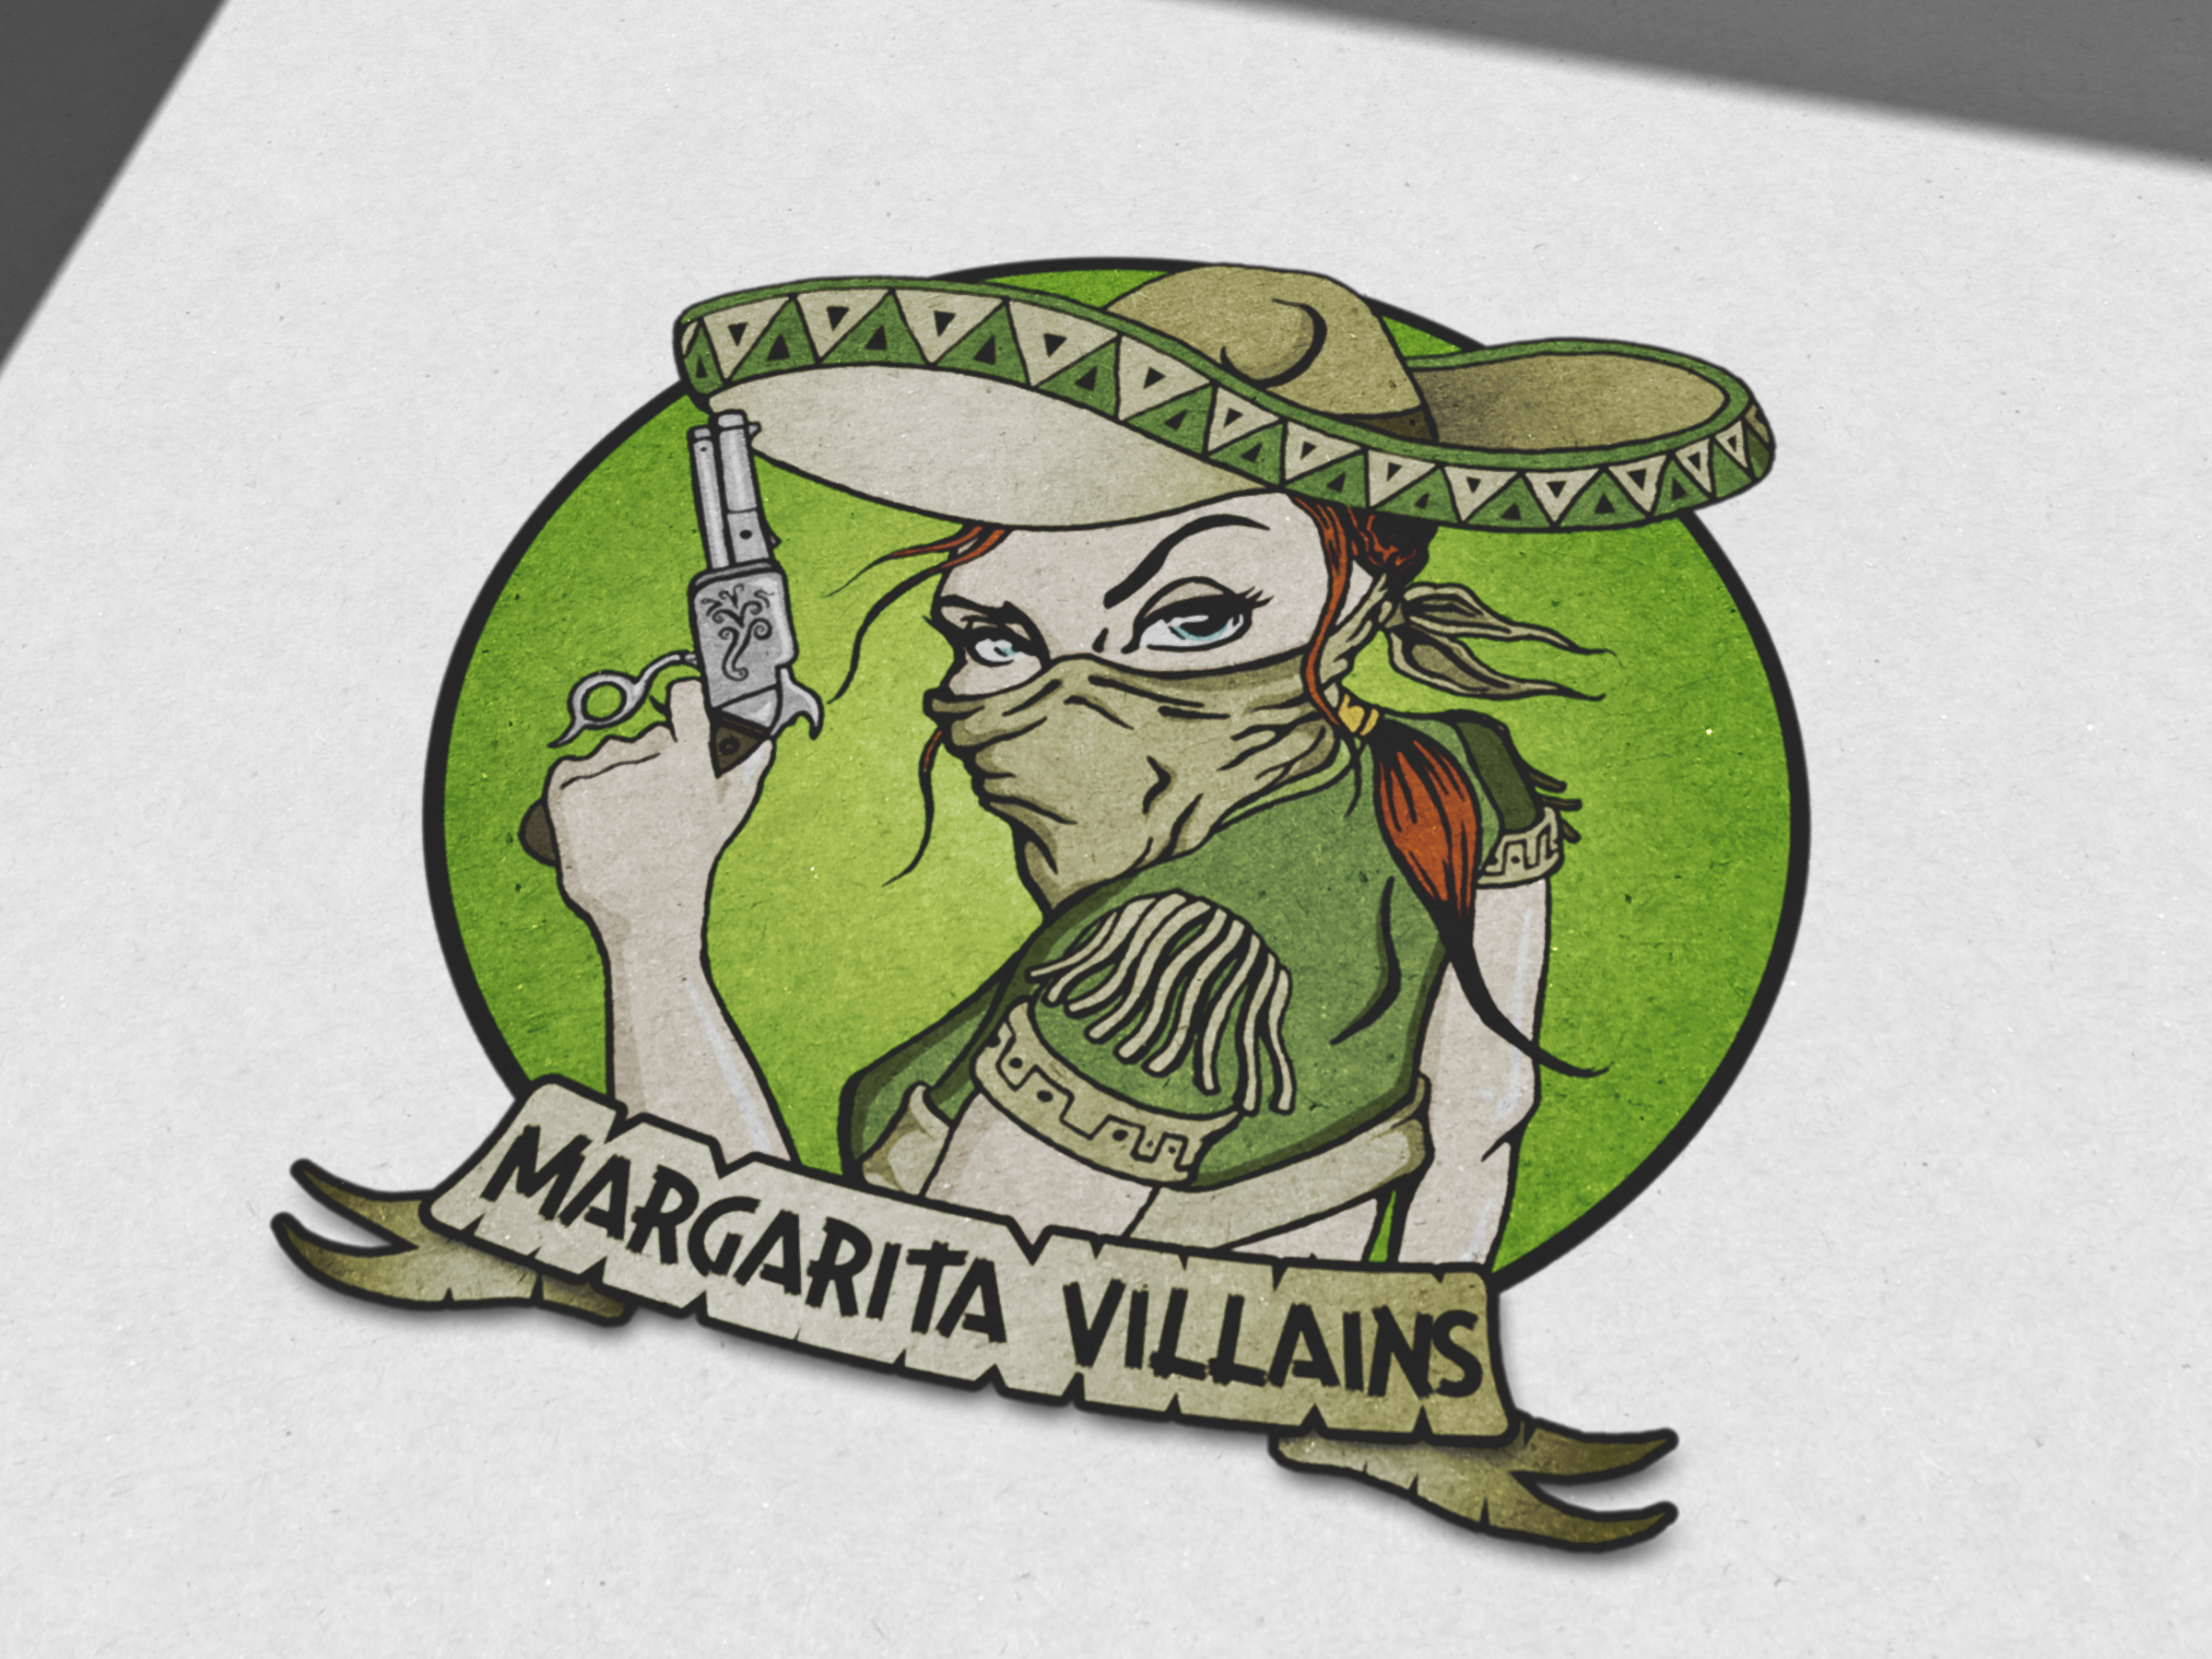 Illustrsation / Logo Design: Margarita Villains